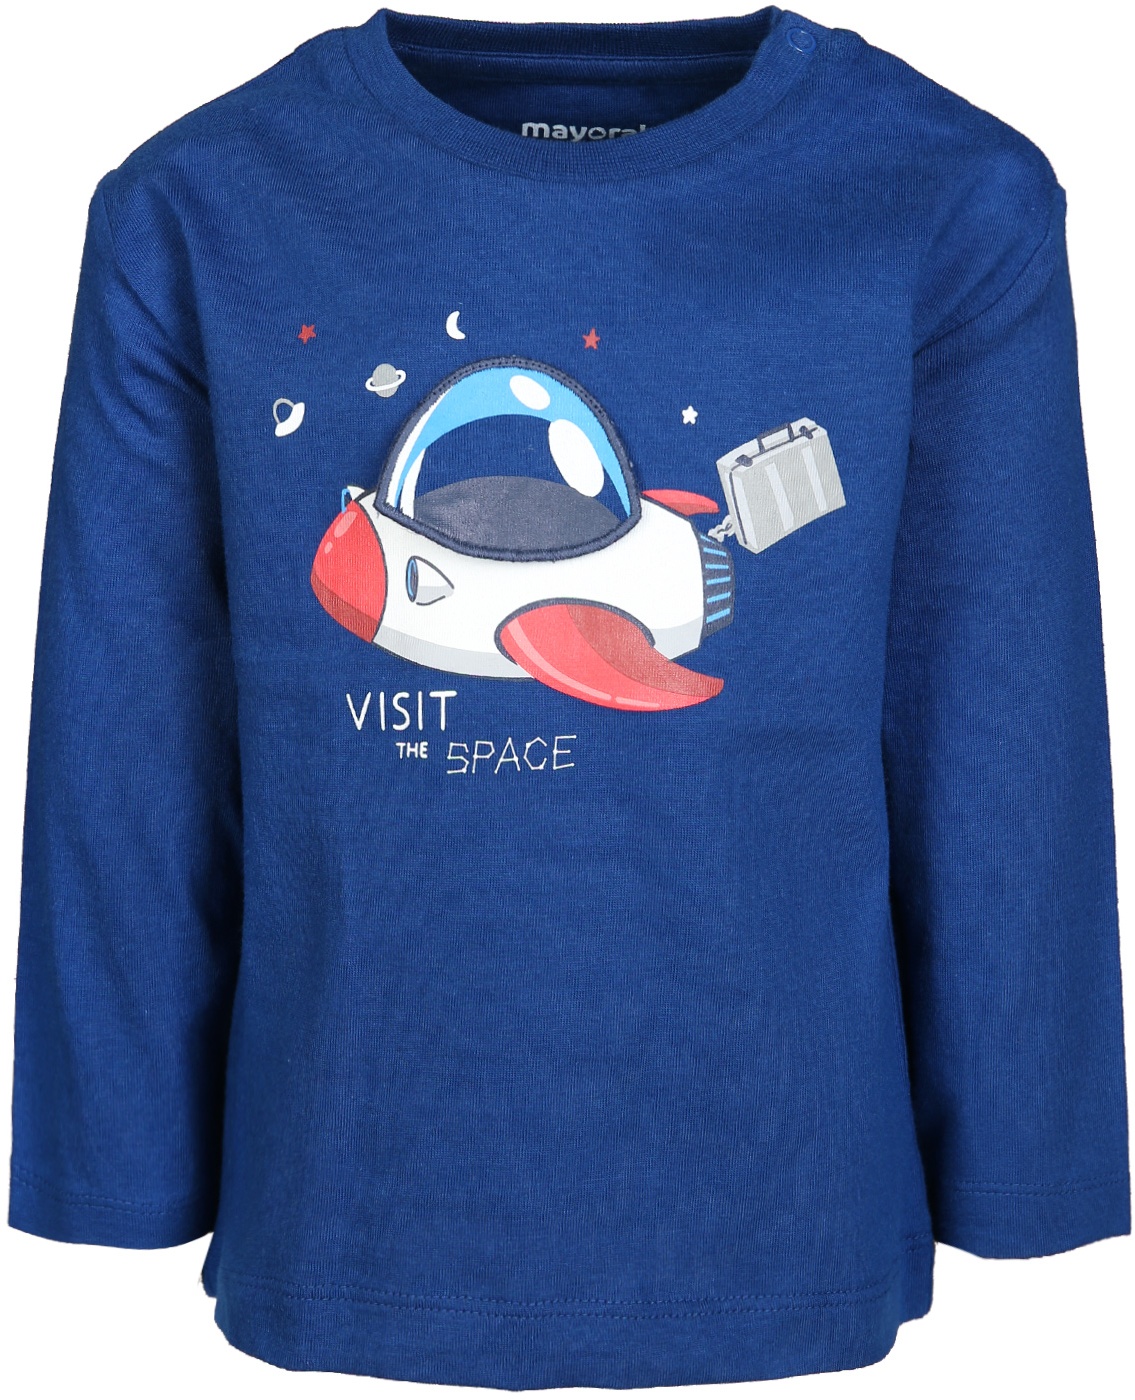 Mayoral - Langarm-Shirt VISIT THE SPACE in blau, Gr.92